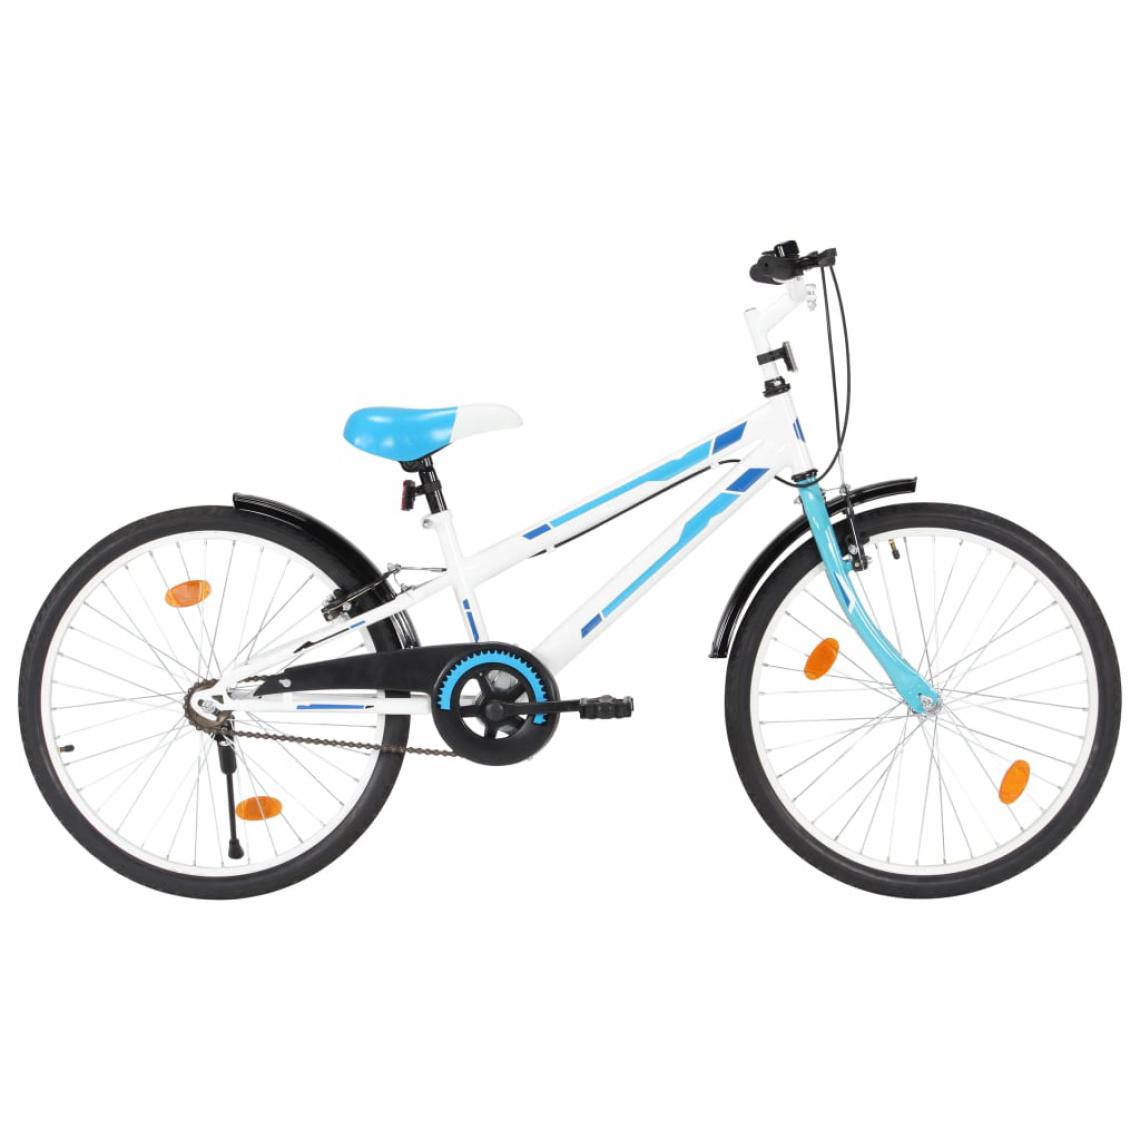 Icaverne - Distingué Cyclisme edition Lima Vélo pour enfants 24 pouces Bleu et blanc - Vélo électrique